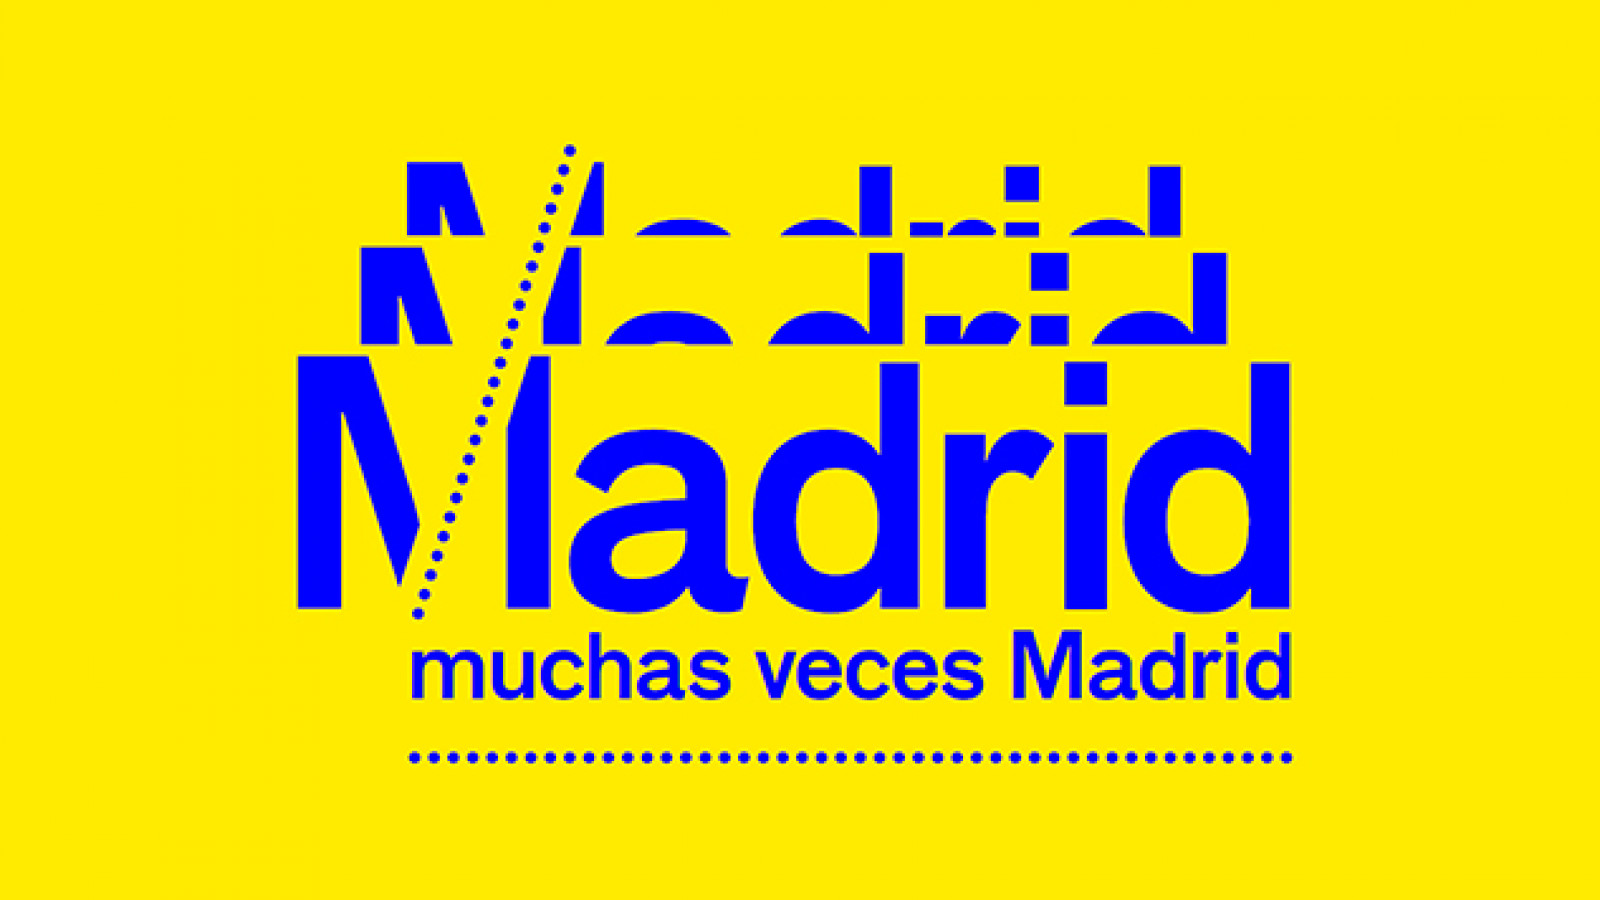 Madrid, Madrid, Madrid, muchas veces Madrid